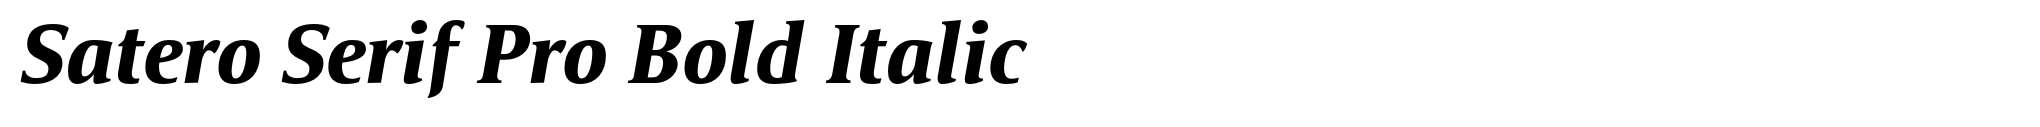 Satero Serif Pro Bold Italic image